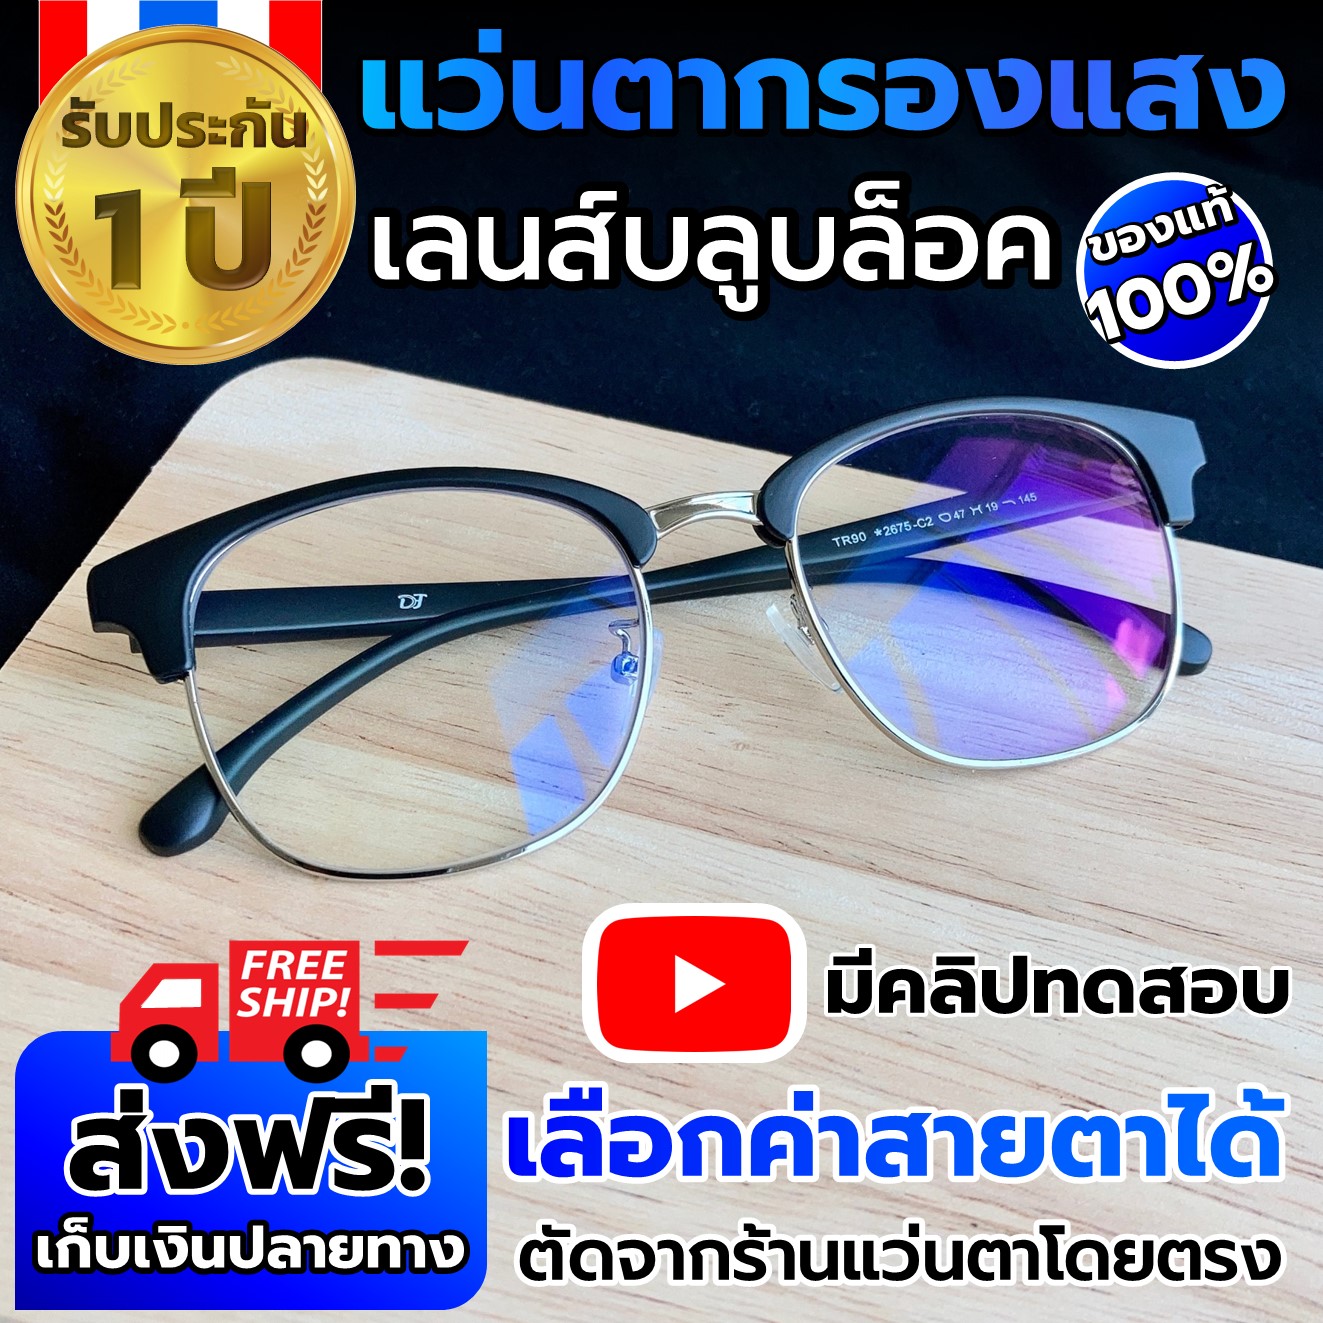 แว่นกรองแสงสีฟ้า แว่นตากรองแสง แว่นสายตา สั้น ผู้ชาย/หญิง แว่นตัดแสงสีฟ้า  แว่นกรองแสงคอมพิวเตอร์ แว่นสายตากรองแสง Blue Block - Rman - Thaipick